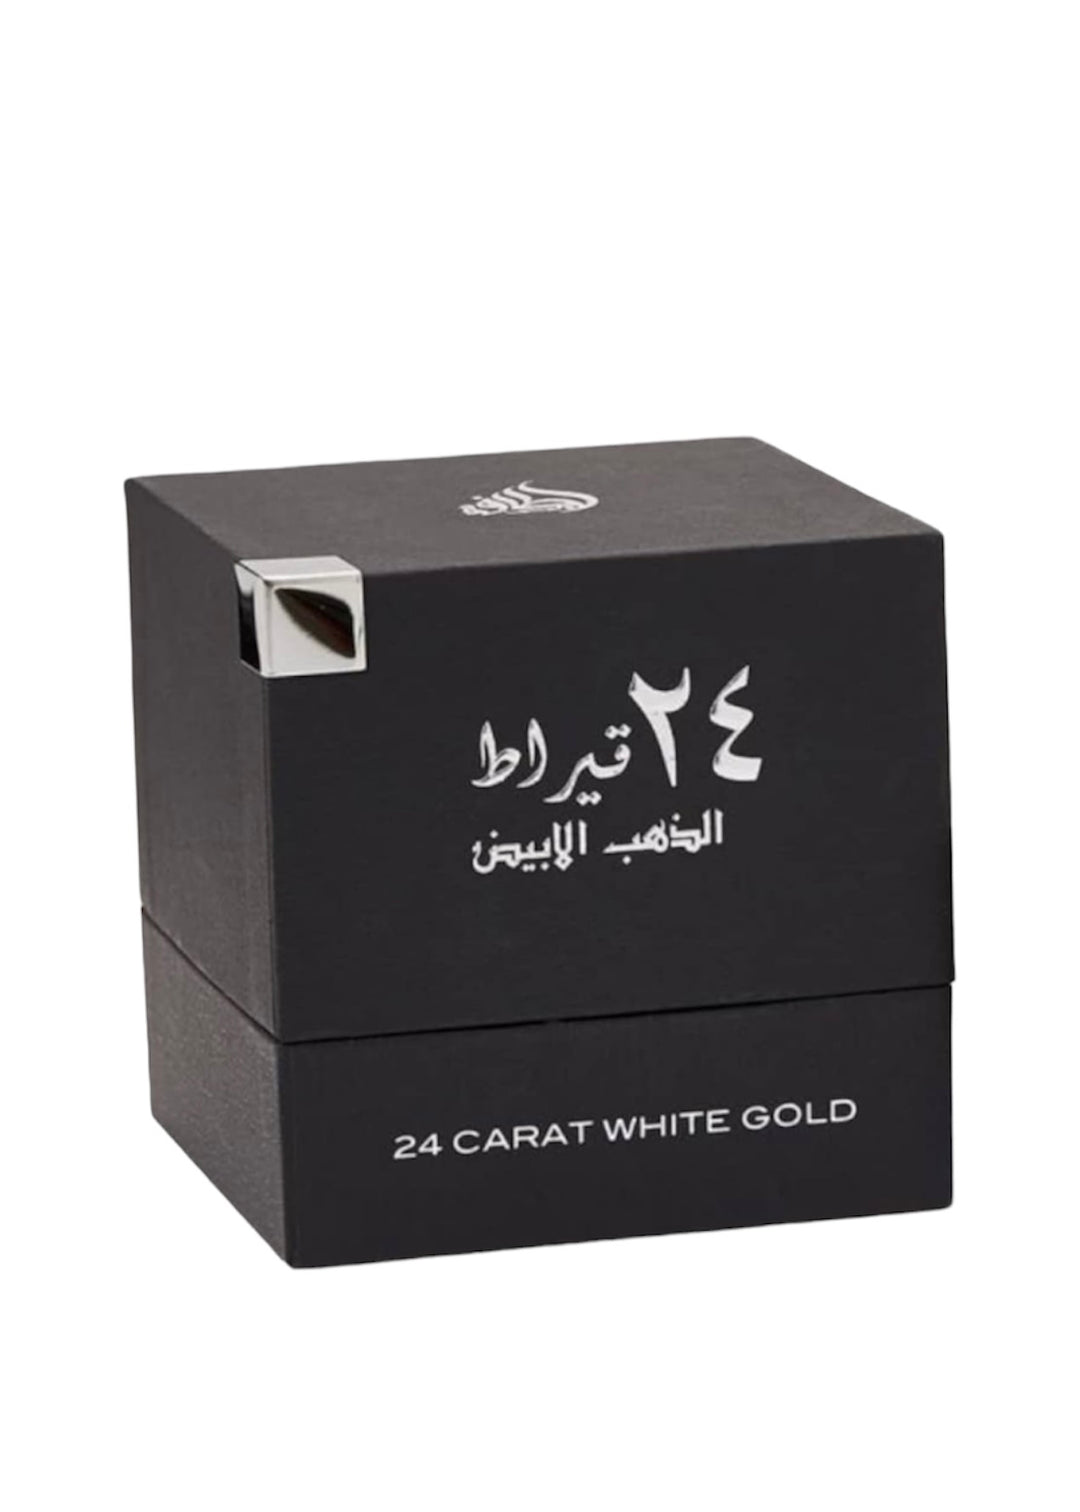 Lattafa Lattafa 24 Carat White Gold by Lattafa Eau De Parfum Spray (Unisex) 3.4 oz